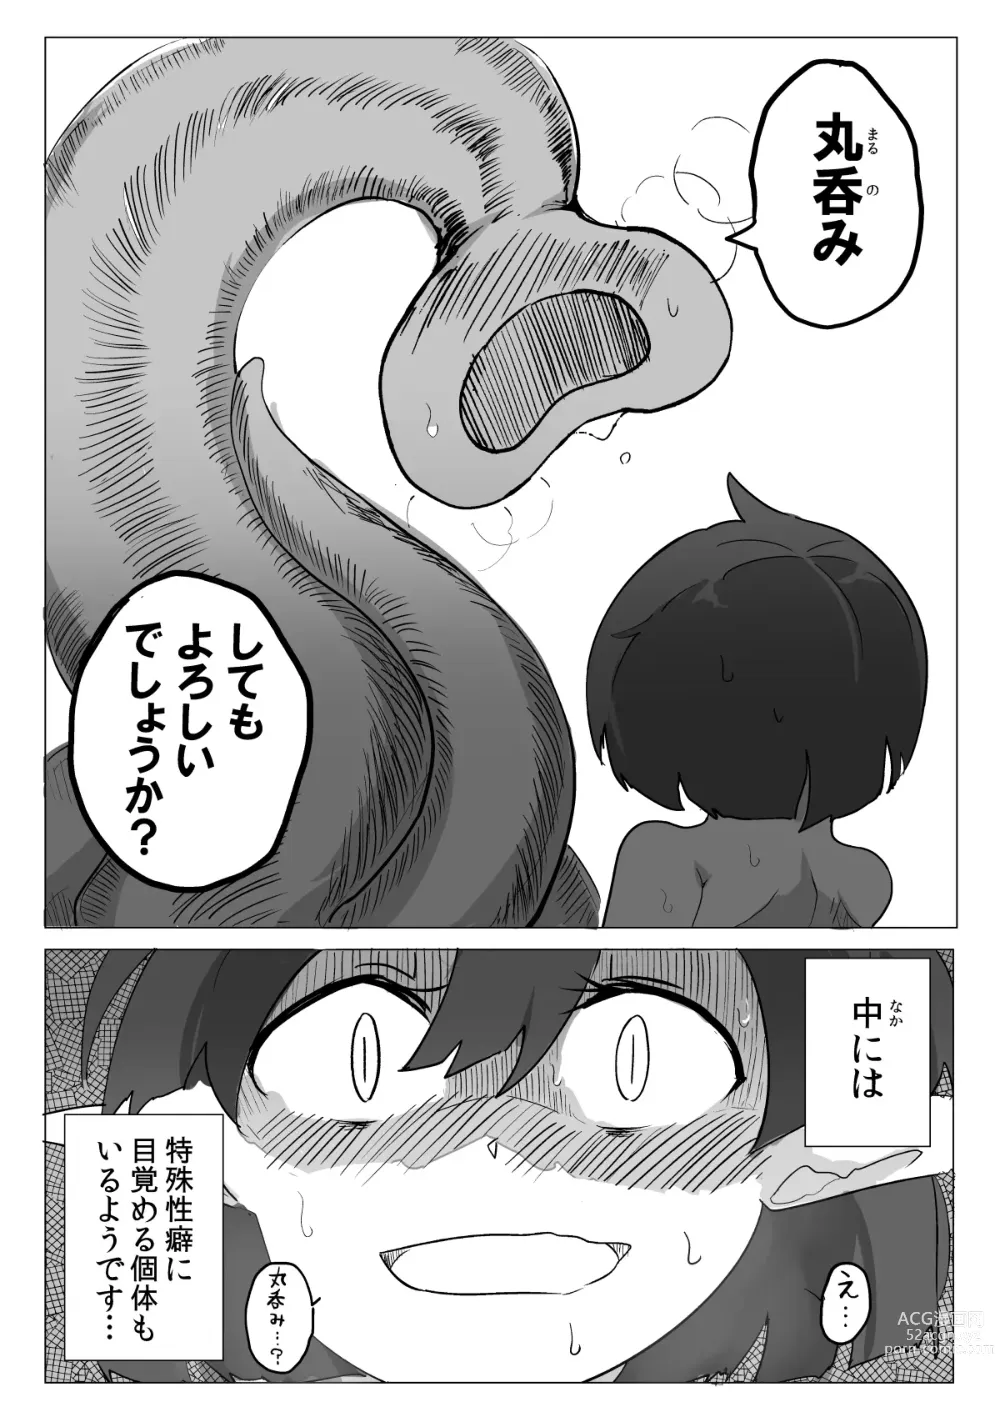 Page 19 of doujinshi Watashi to Shokushu no Kyuuryoubi